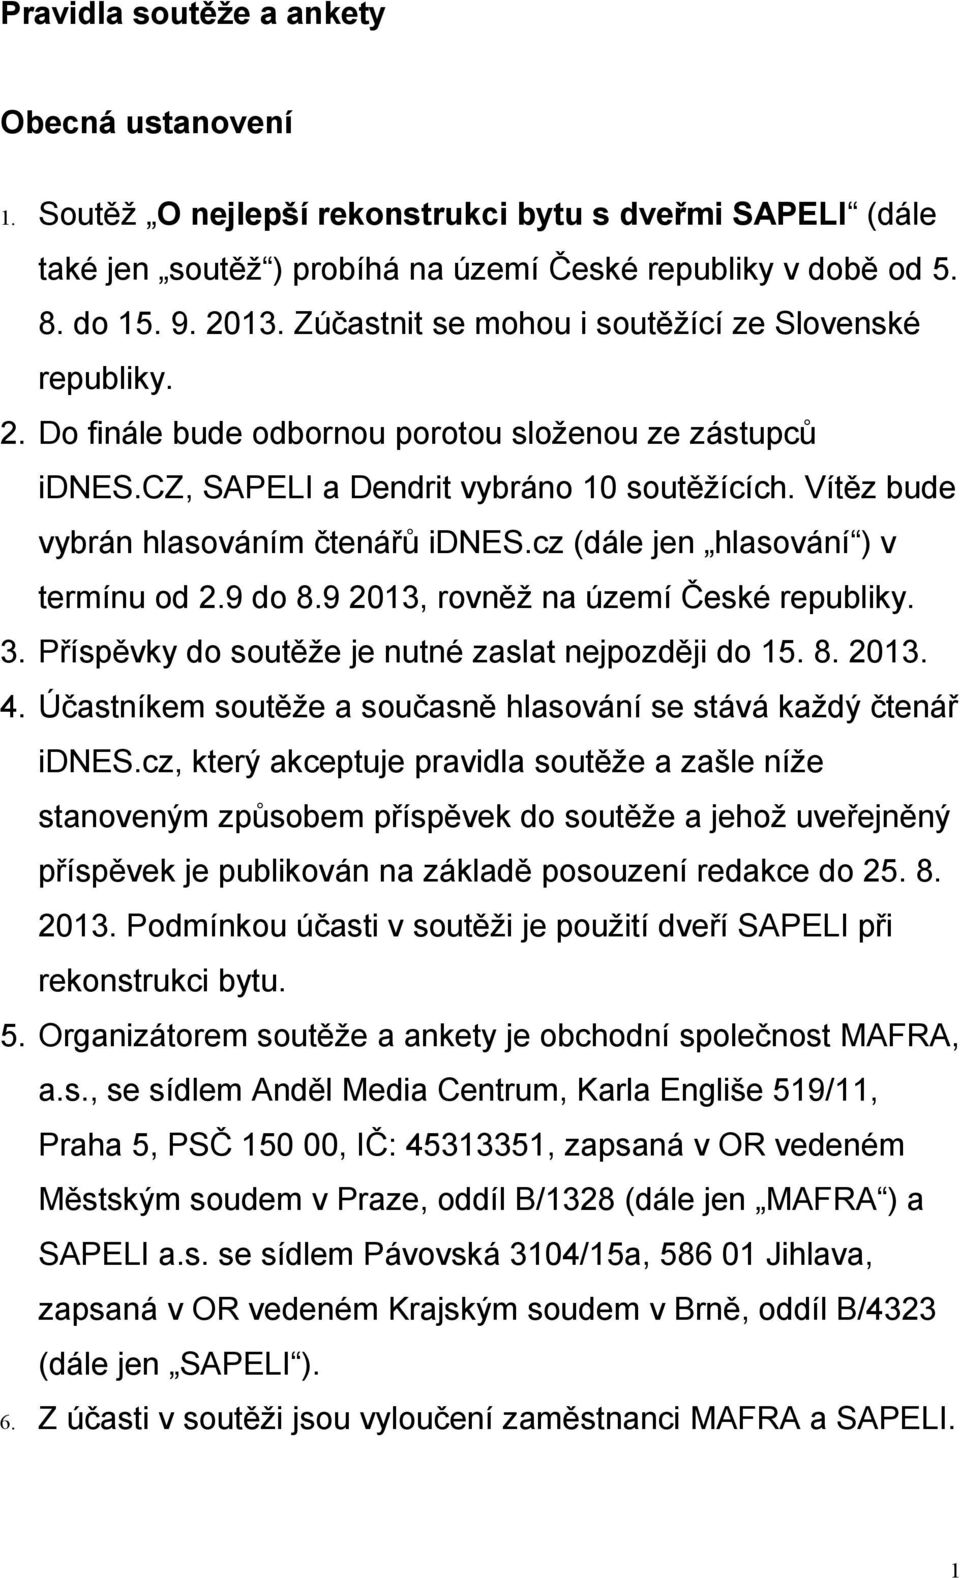 Vítěz bude vybrán hlasováním čtenářů idnes.cz (dále jen hlasování ) v termínu od 2.9 do 8.9 2013, rovněž na území České republiky. 3. Příspěvky do soutěže je nutné zaslat nejpozději do 15. 8. 2013. 4.